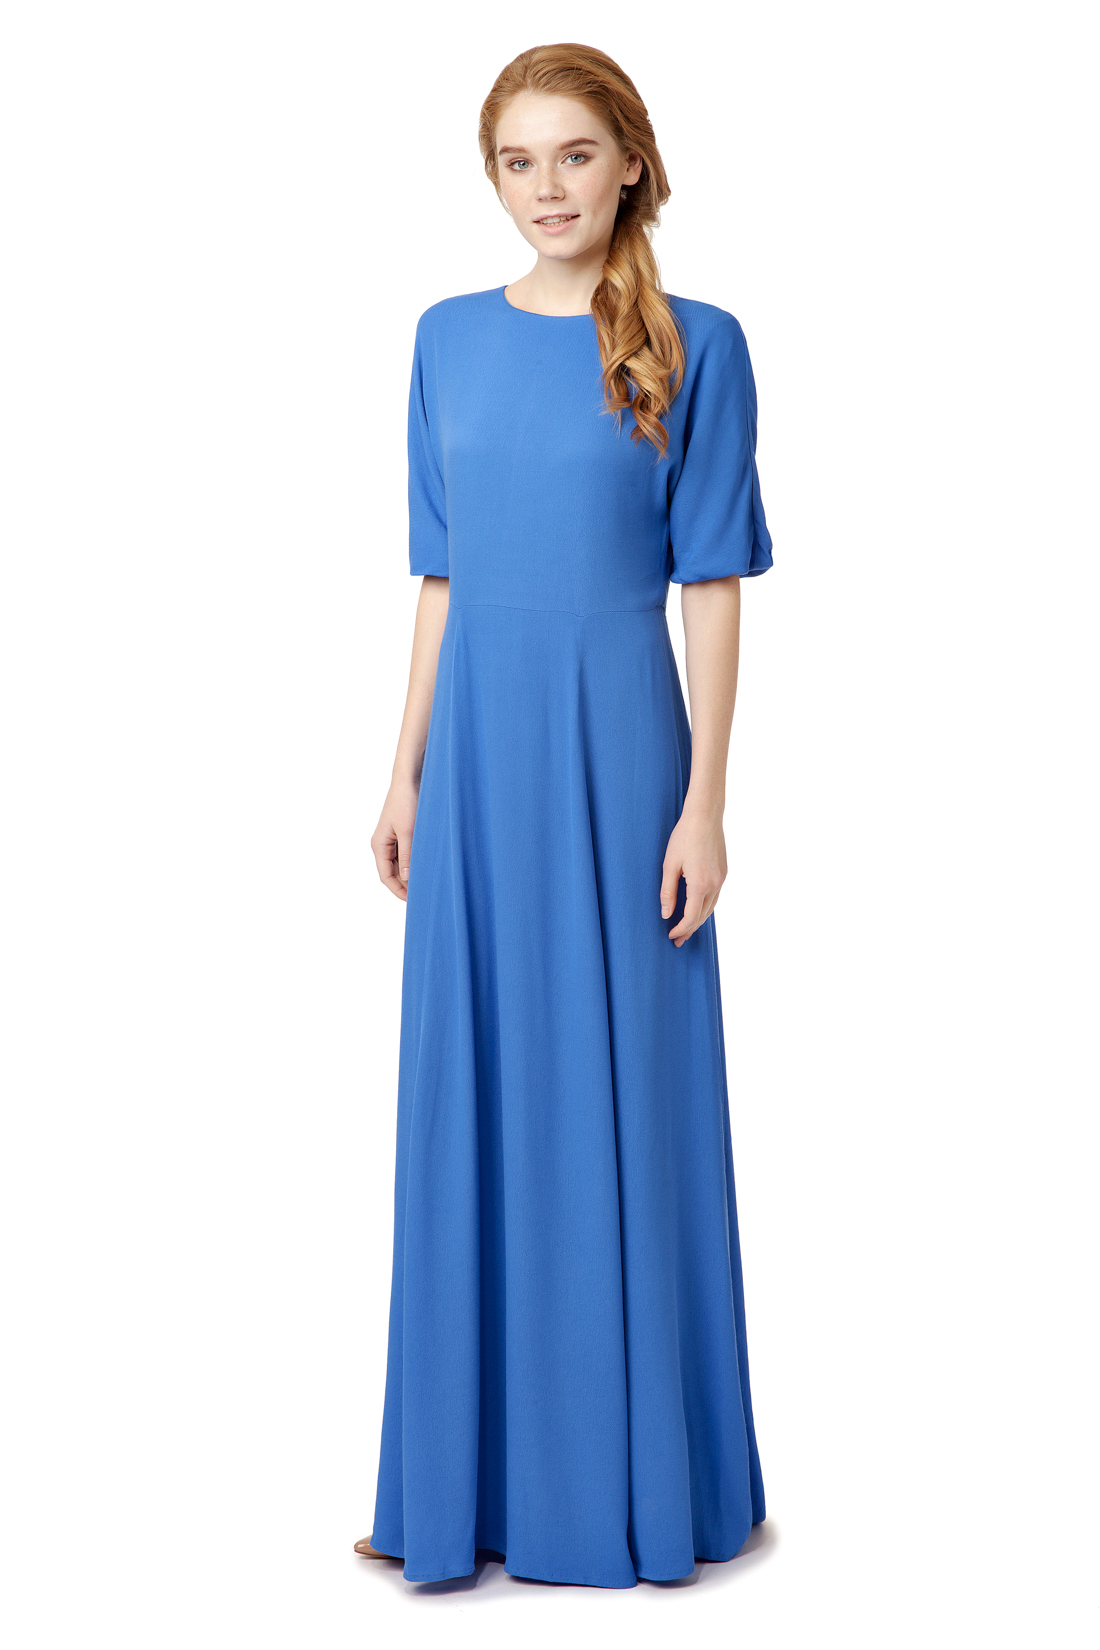 Платье с вырезом на спине (арт. baon B457025), размер S, цвет синий Платье с вырезом на спине (арт. baon B457025) - фото 1